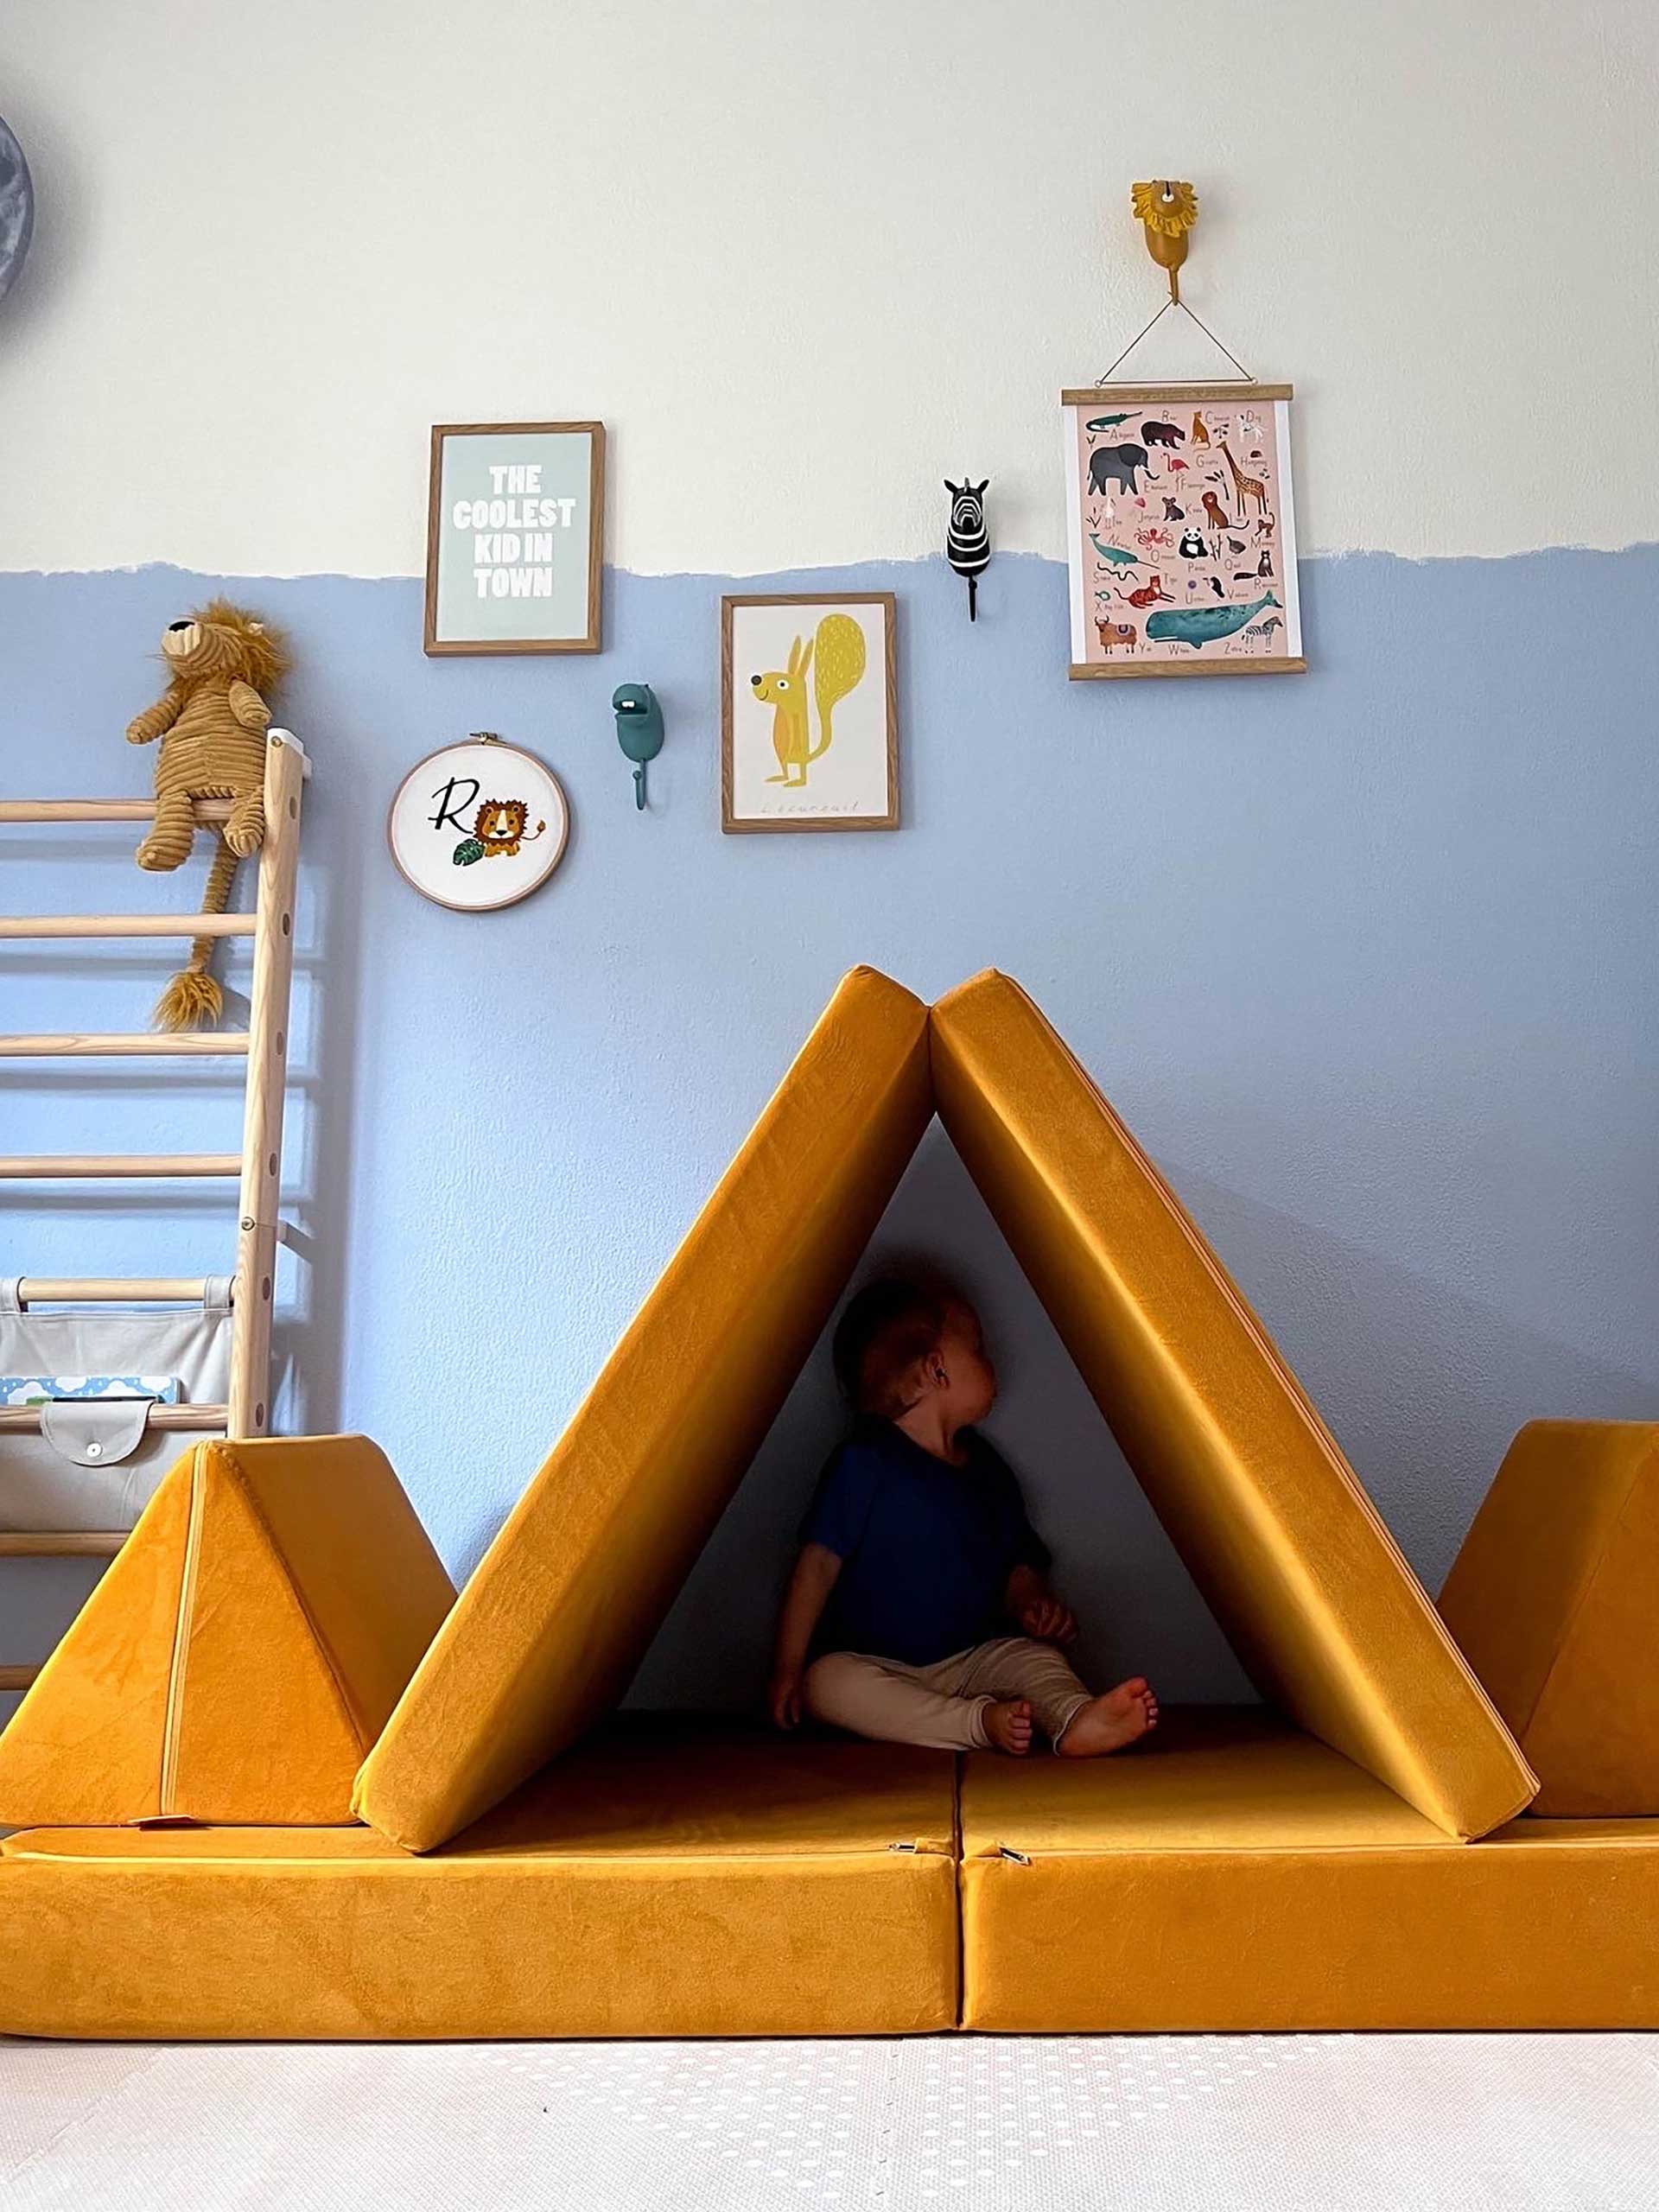 Du suchst nach Ideen um dein Kleinkind zu Hause zu beschäftigen:? 19 tolle Ideen für kleine Kids findest du auf meinem Mamablog whoismocca.com